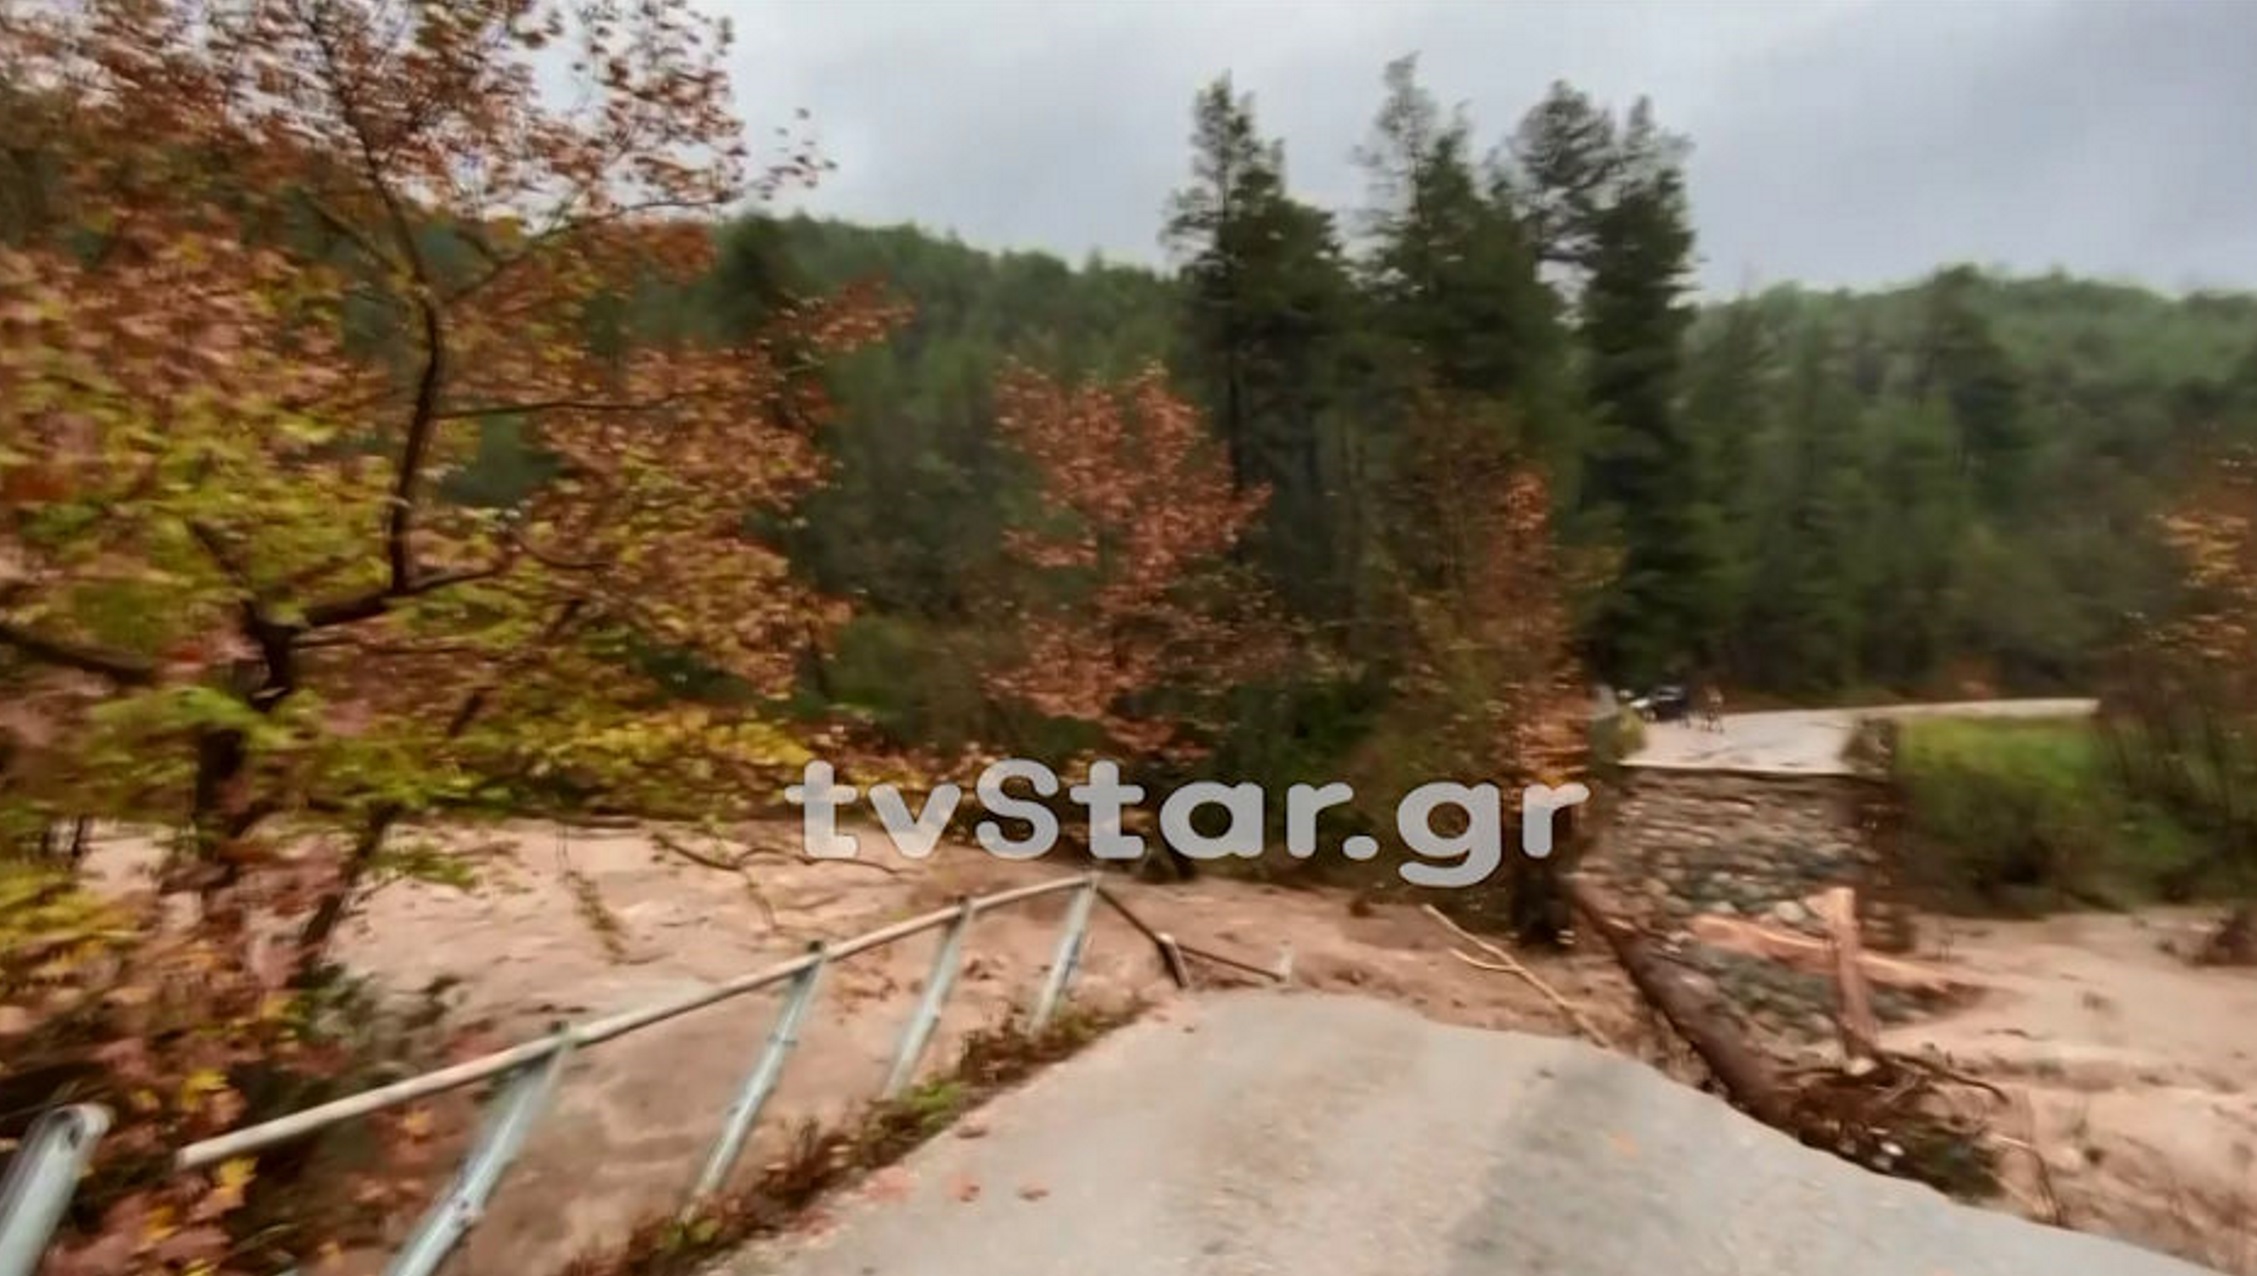 Εύβοια: Έπεσε γέφυρα και αποκλείστηκαν χωριά! Αυτοψία στο σημείο που έκοψε την περιοχή στα δύο [video]